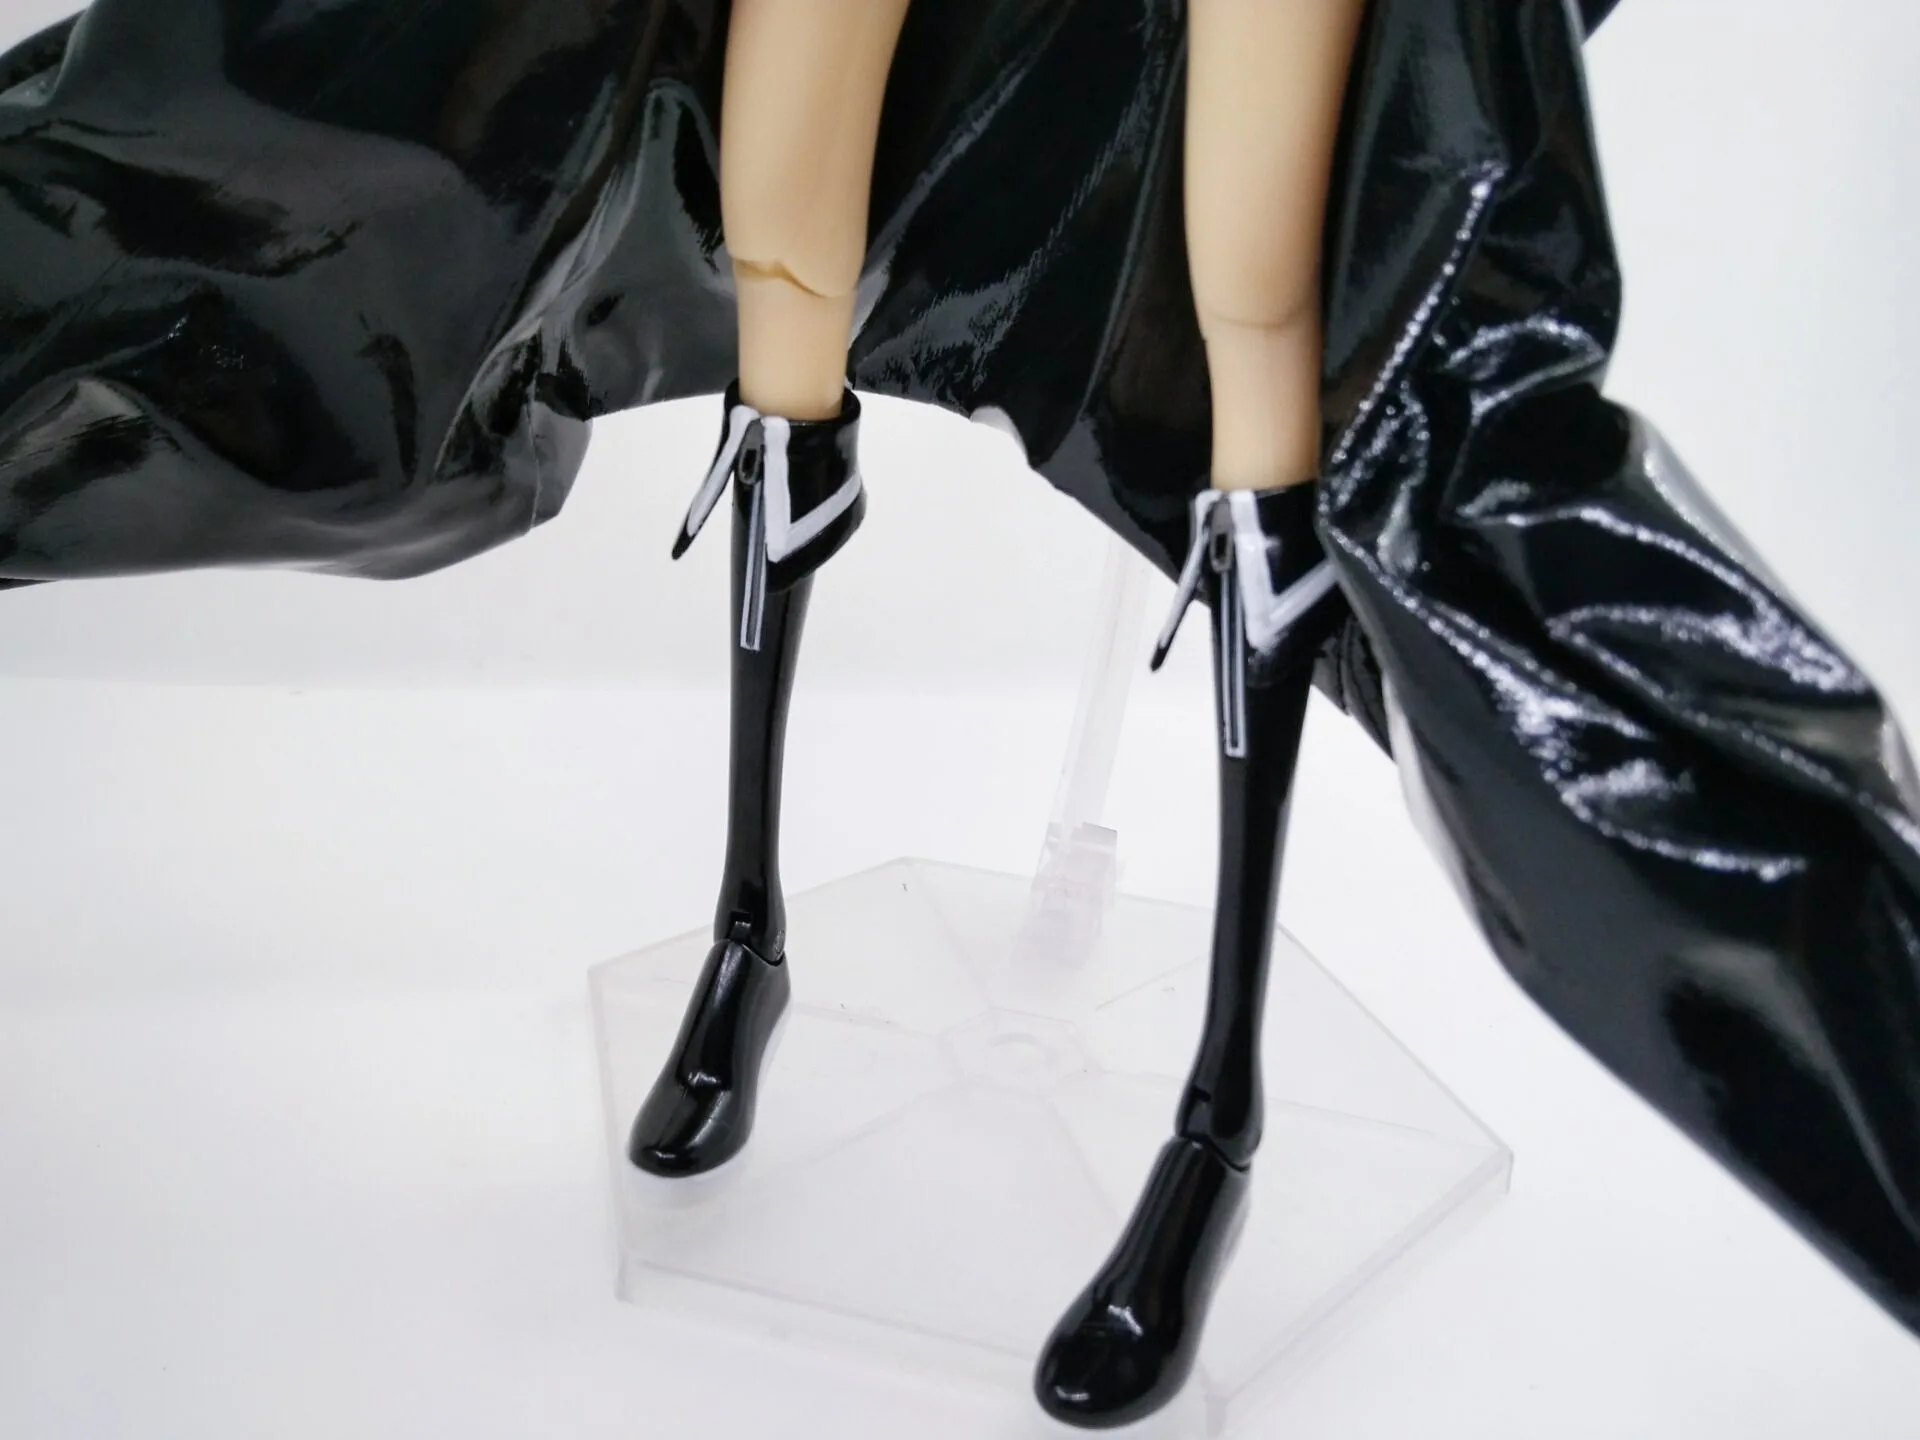 28 см аниме фигурка черная подвижная рок-шутер герои белое издание Ver ПВХ модель сексуальная Высококачественная коллекция кукла Новинка